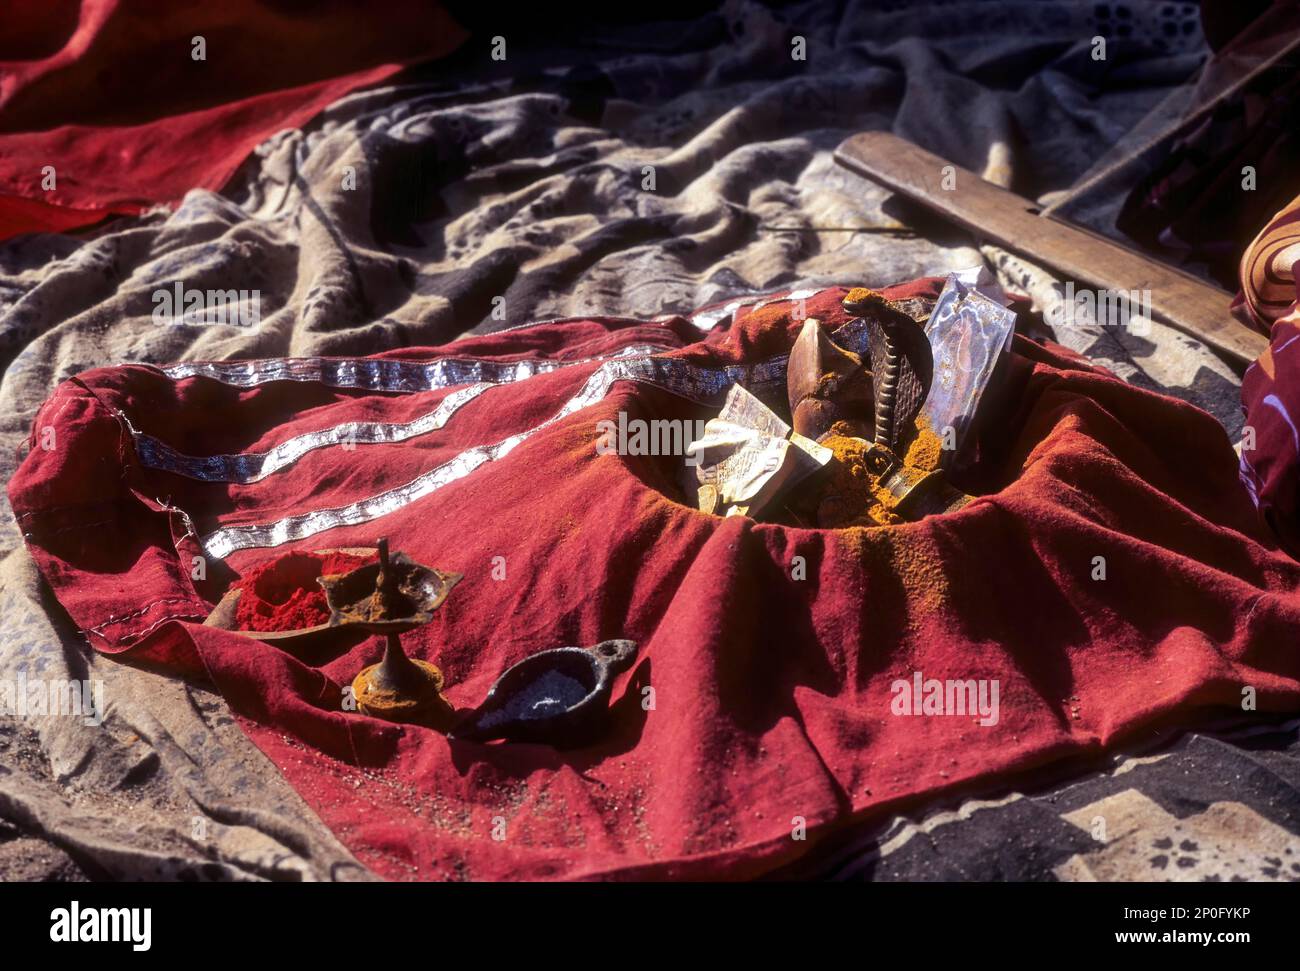 Ein Bettler zeigte eine Nagarschlange auf einem attraktiven roten Tuch in kerala, Südindien, Indien, Asien Stockfoto